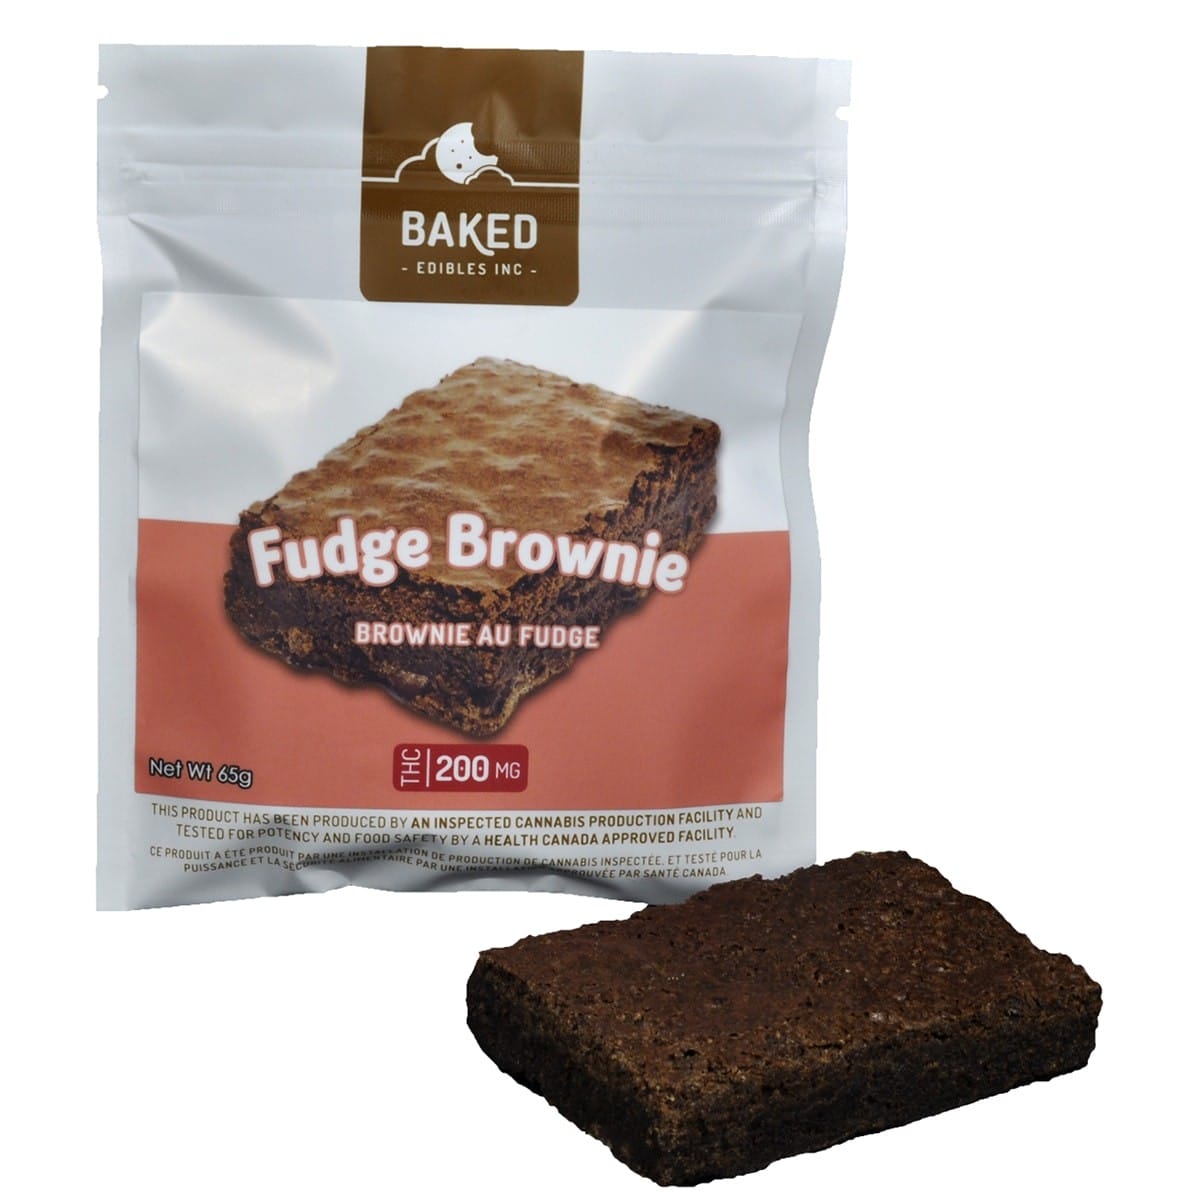 Baked Edibles INC. - Fudge Brownie